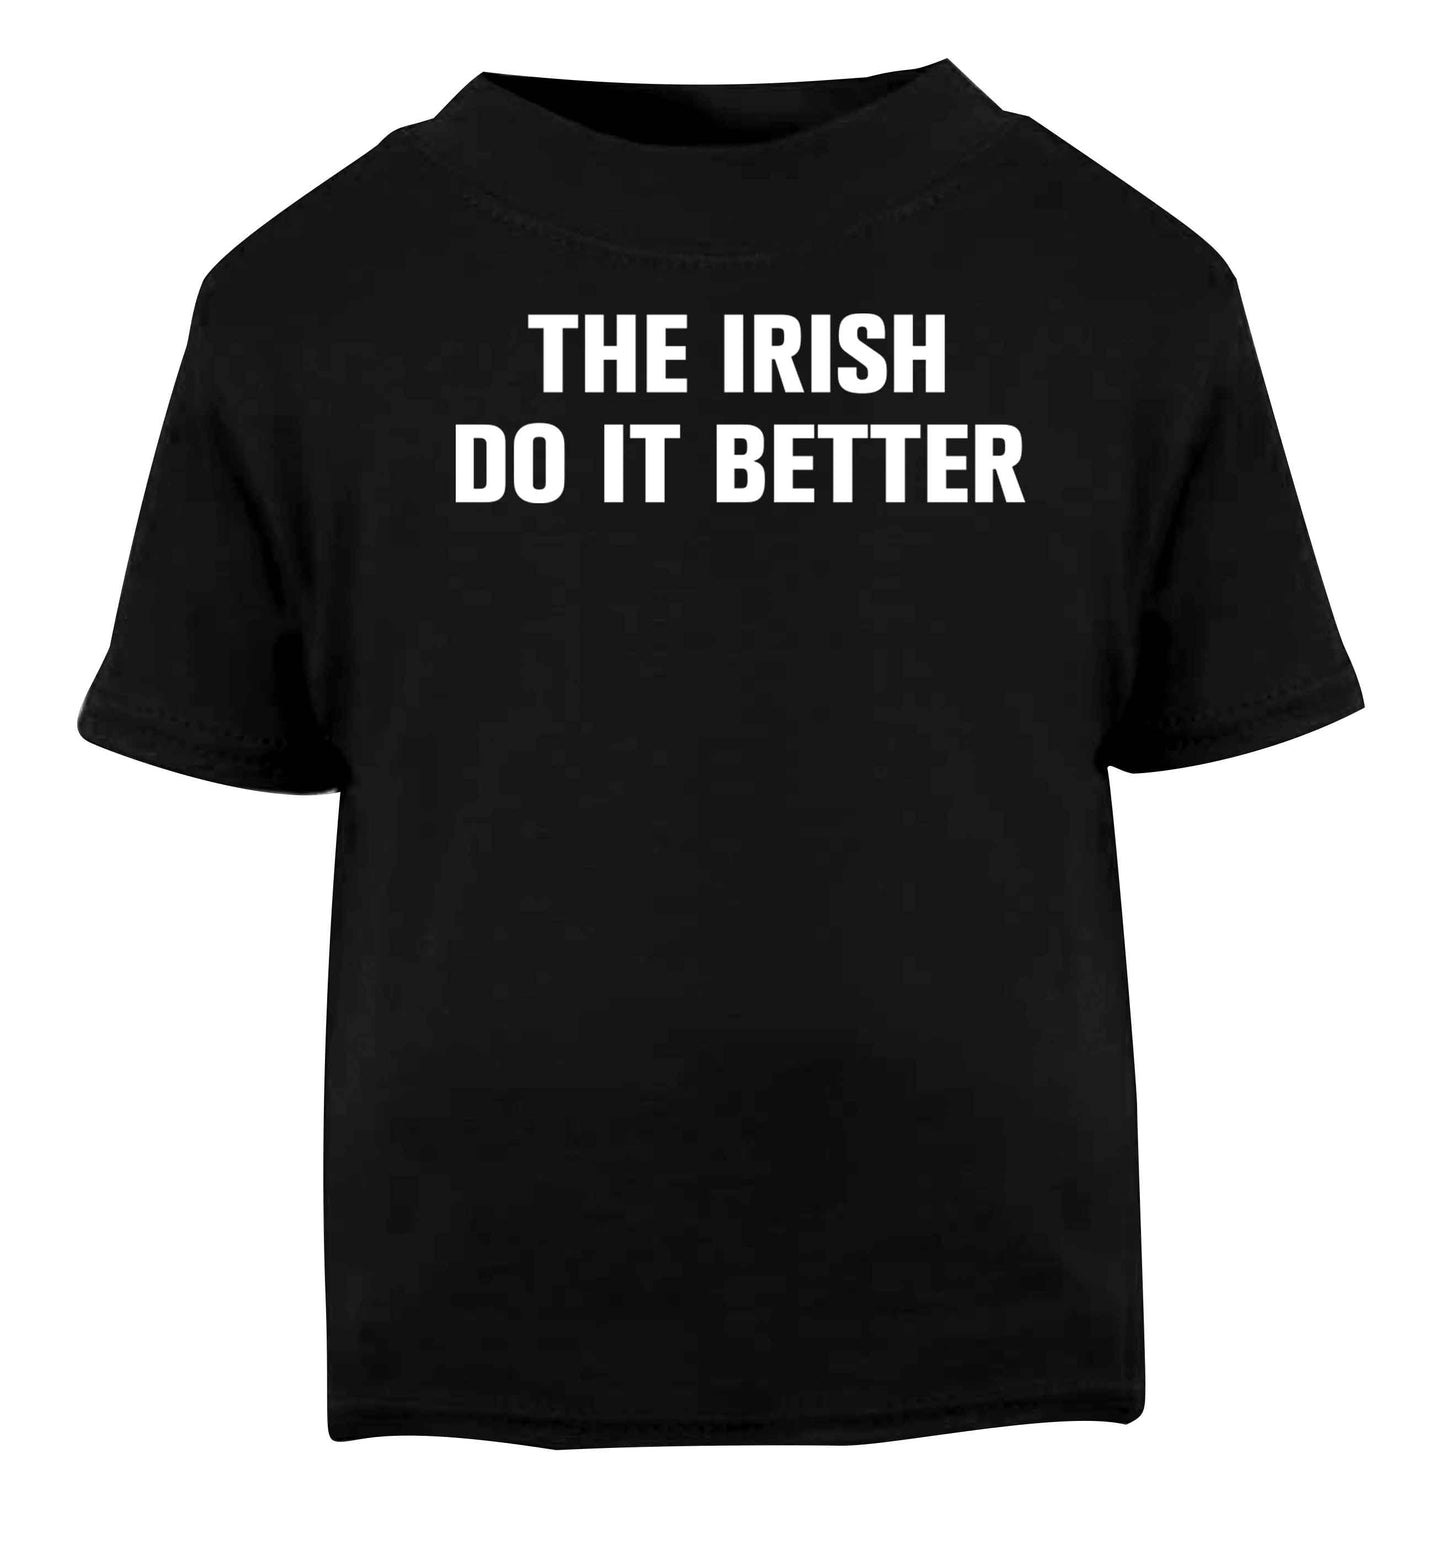 The Irish do it better Black baby toddler Tshirt 2 years